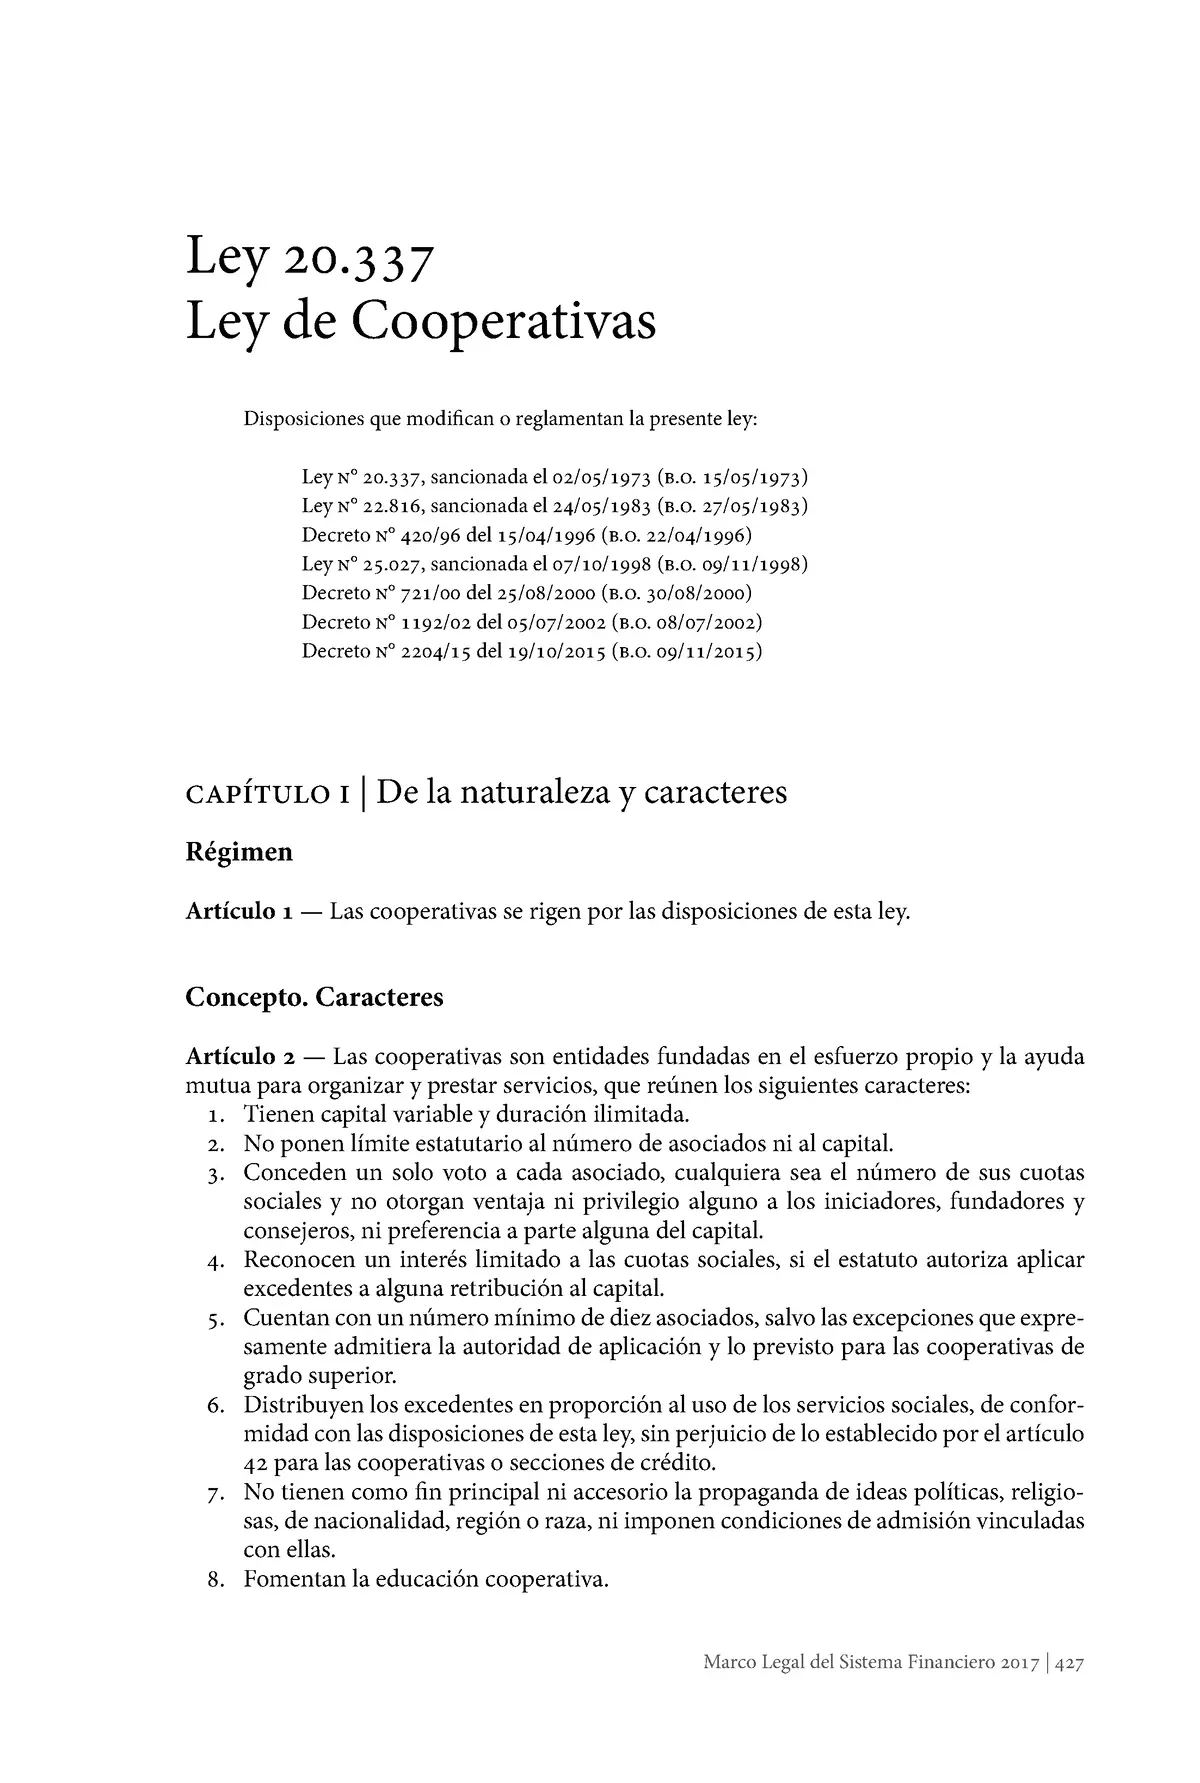 ley 20337 cooperativas resumen - Qué ley rige las cooperativas en la Argentina